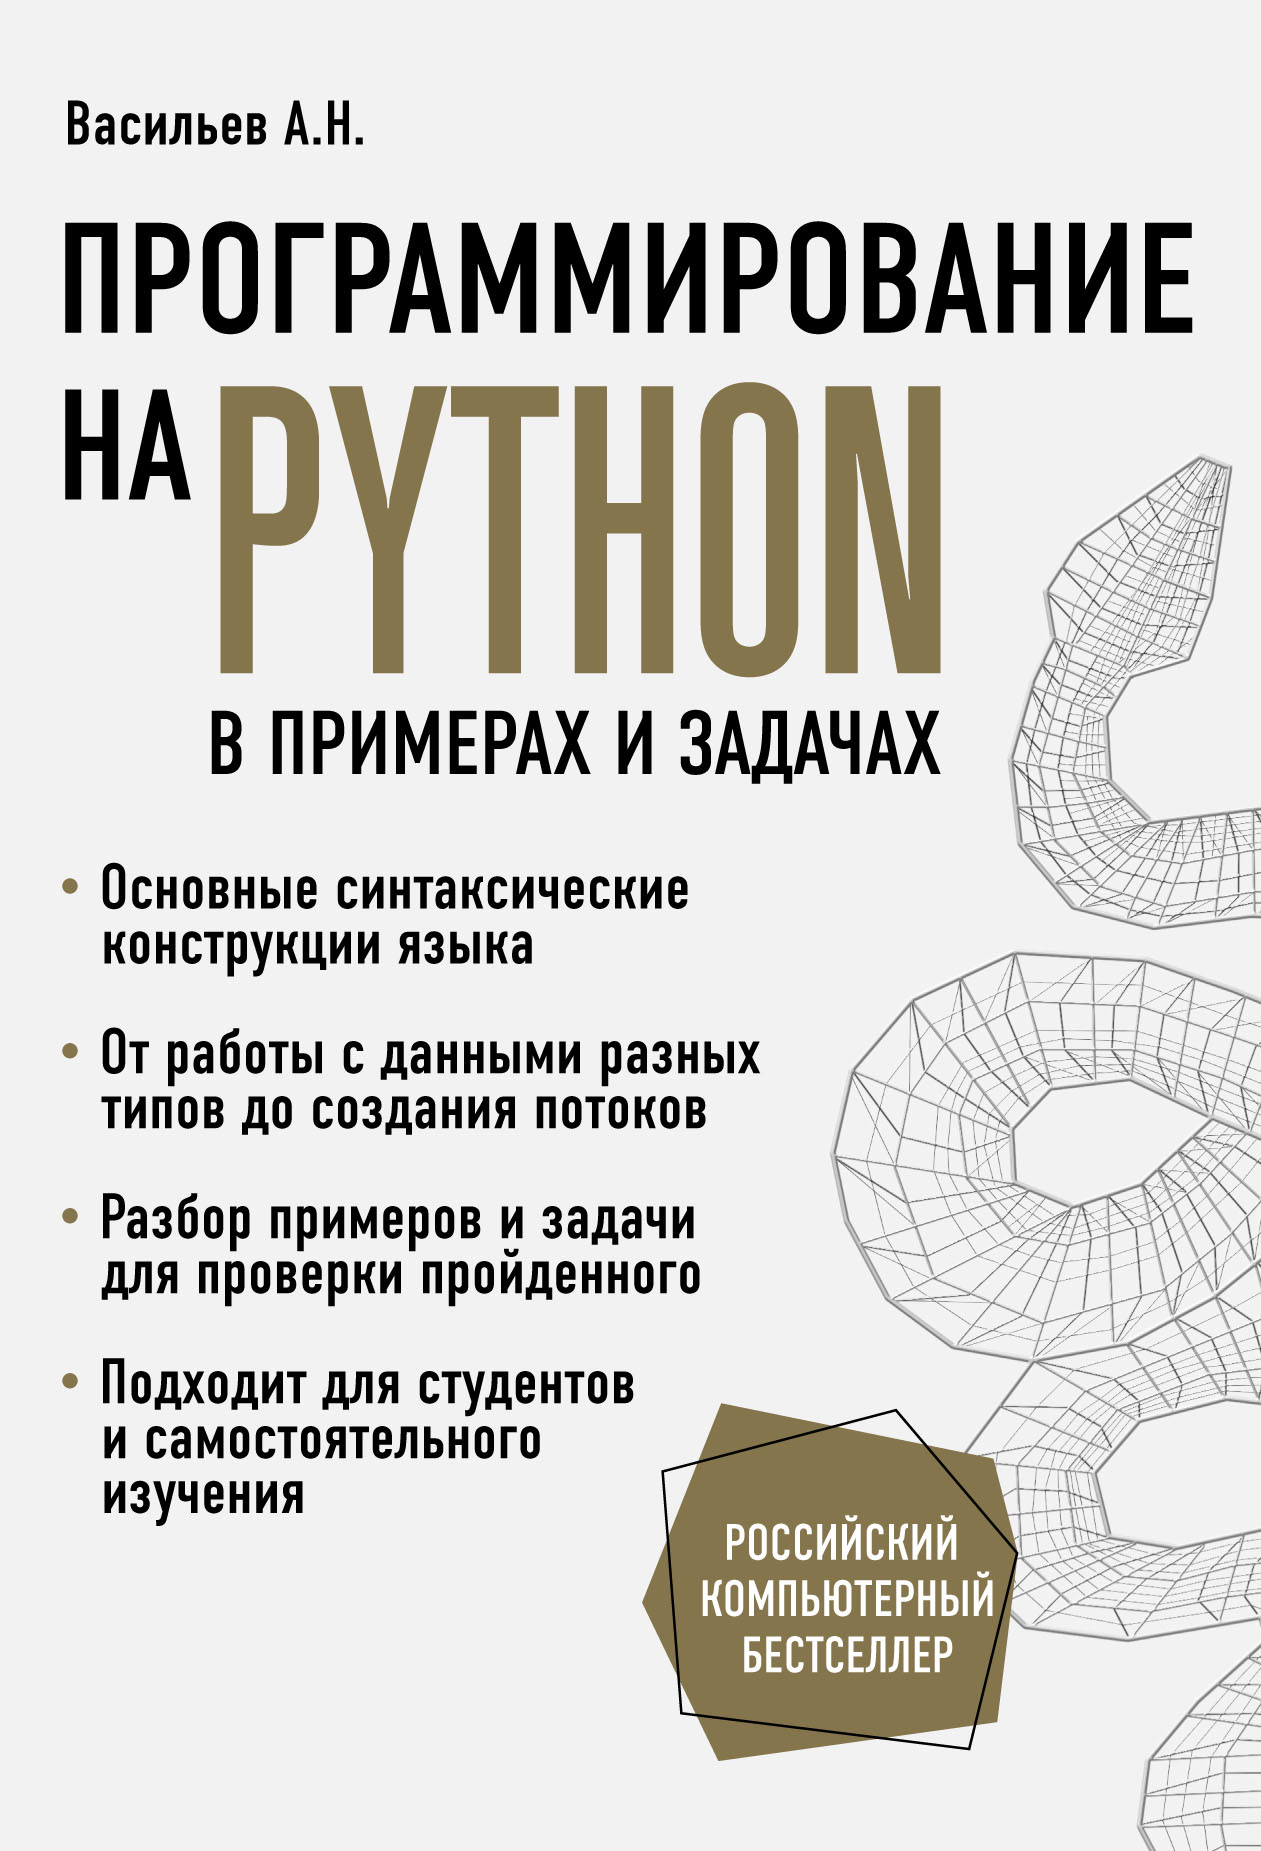 Книга Российский компьютерный бестселлер Программирование на Python в примерах и задачах созданная Алексей Васильев, Бомбора может относится к жанру программирование. Стоимость электронной книги Программирование на Python в примерах и задачах с идентификатором 63455717 составляет 529.00 руб.